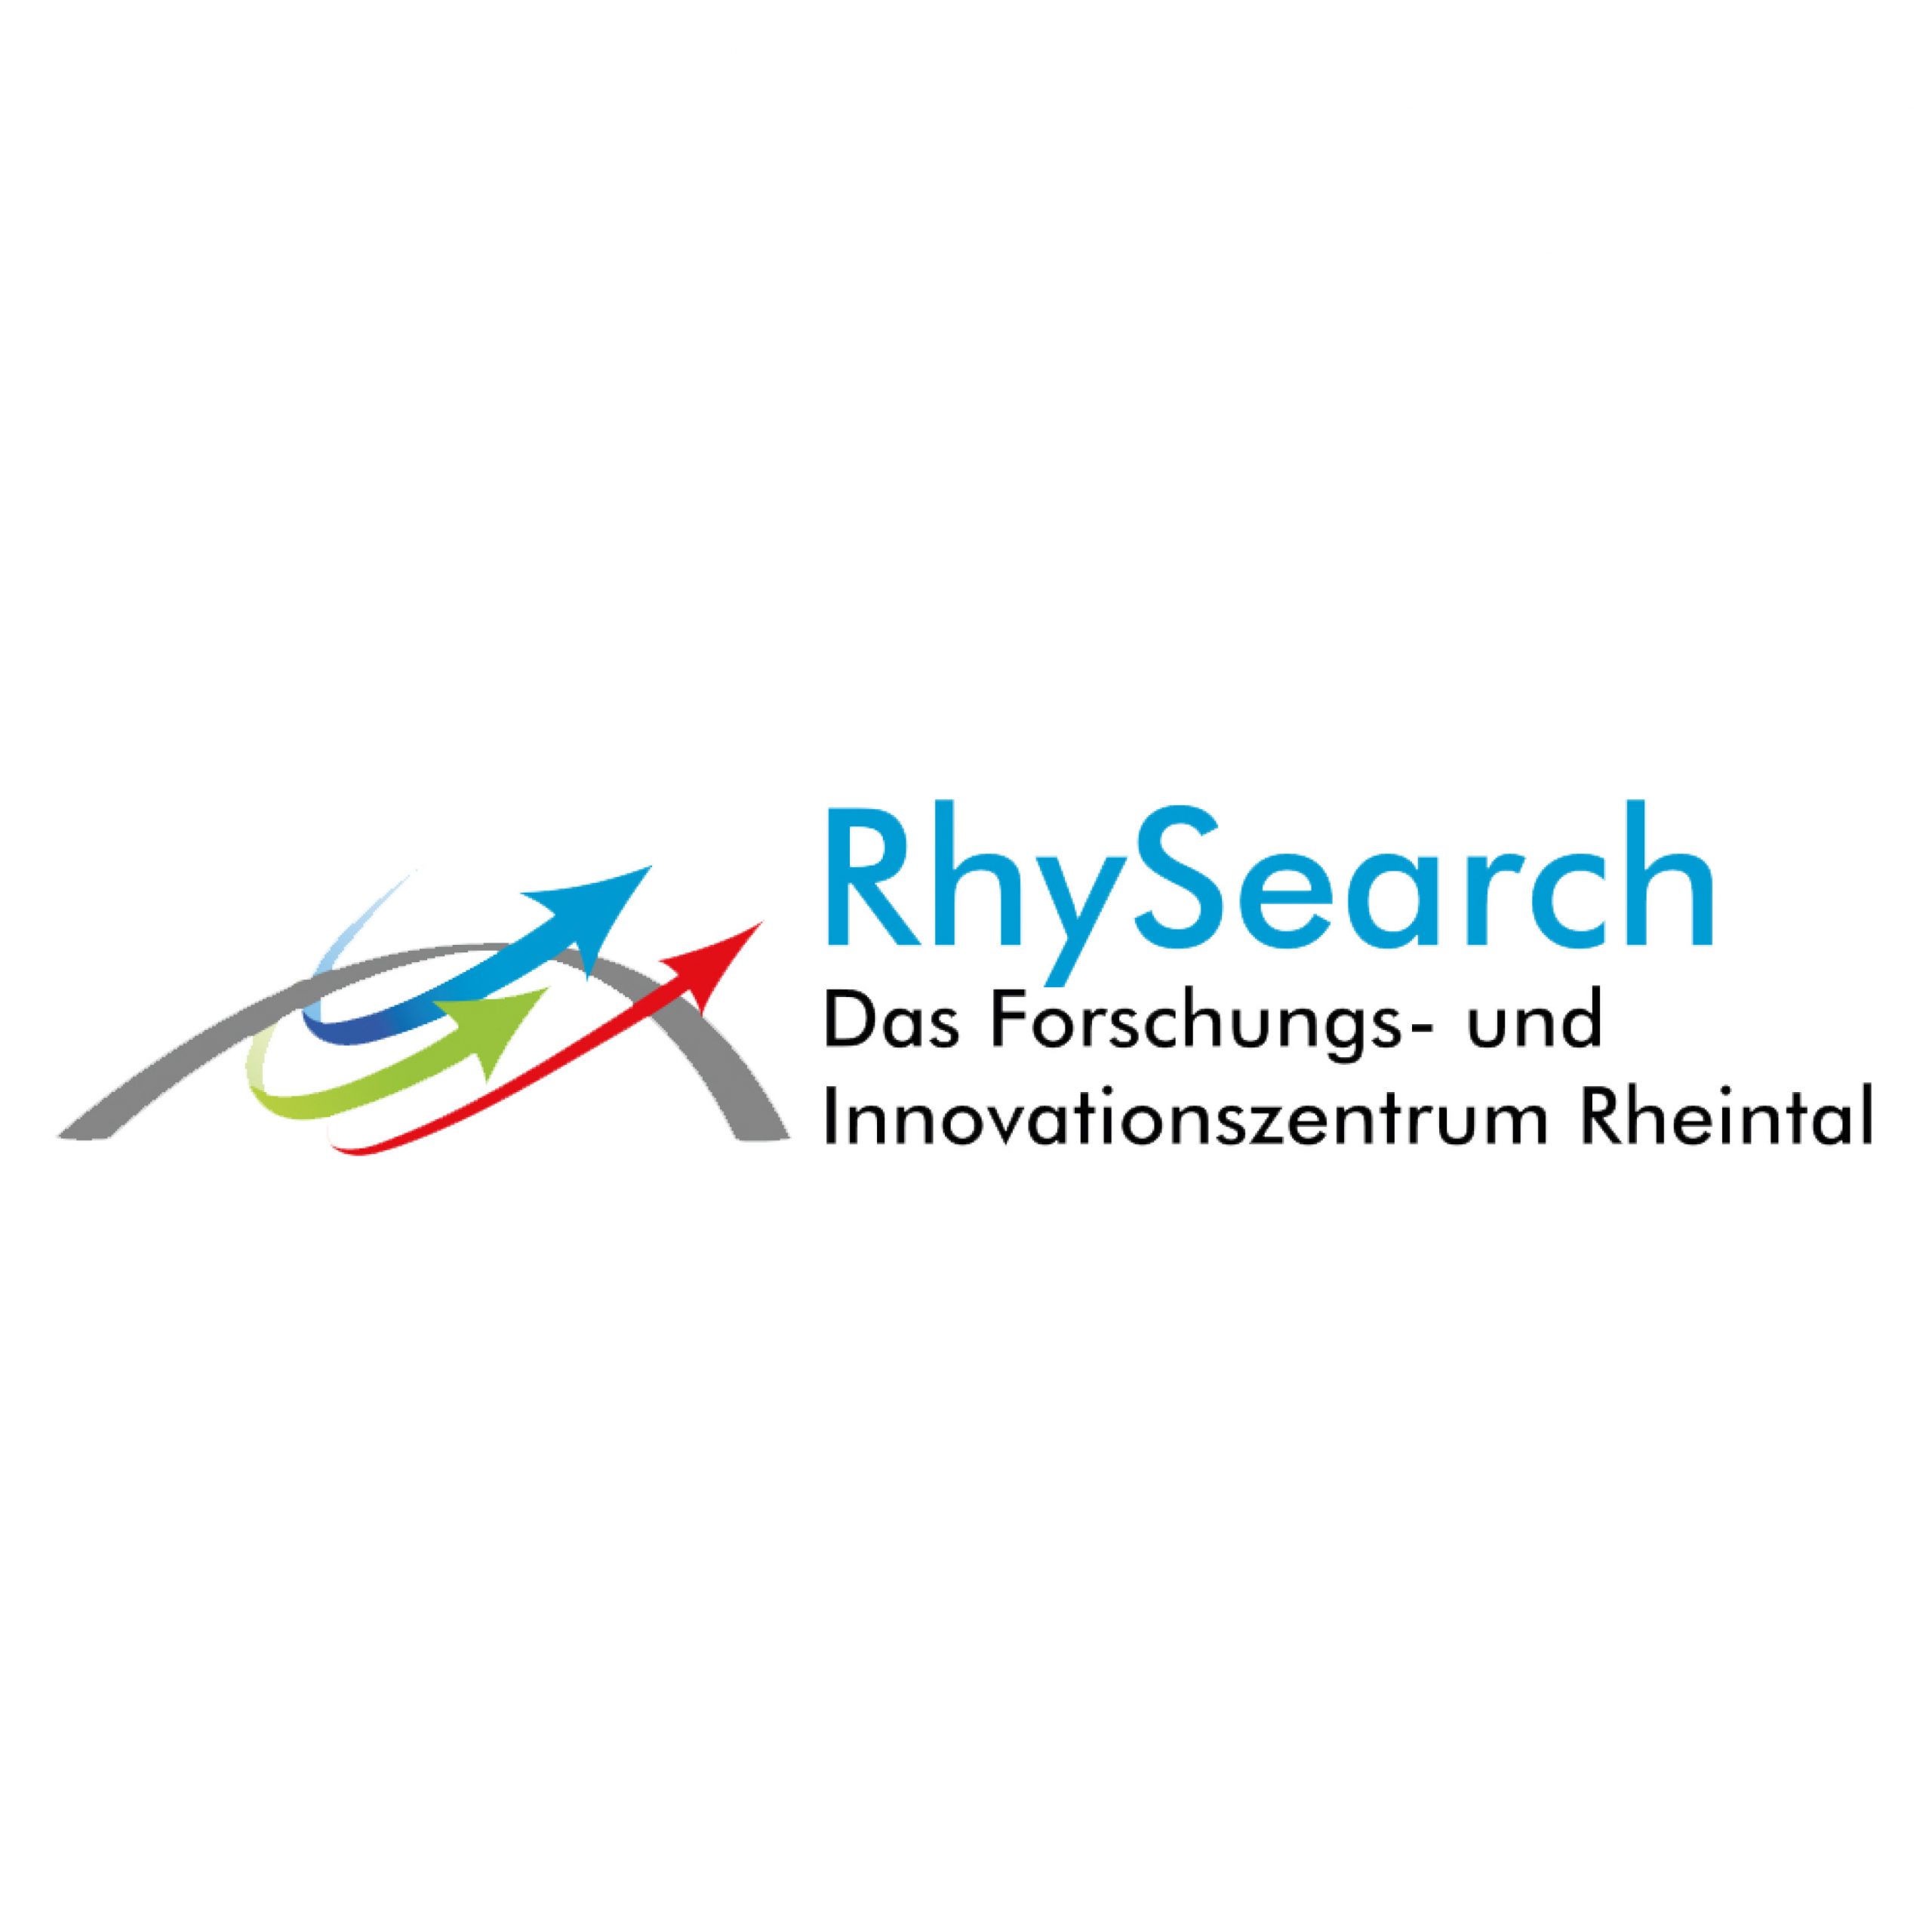 RhySearch